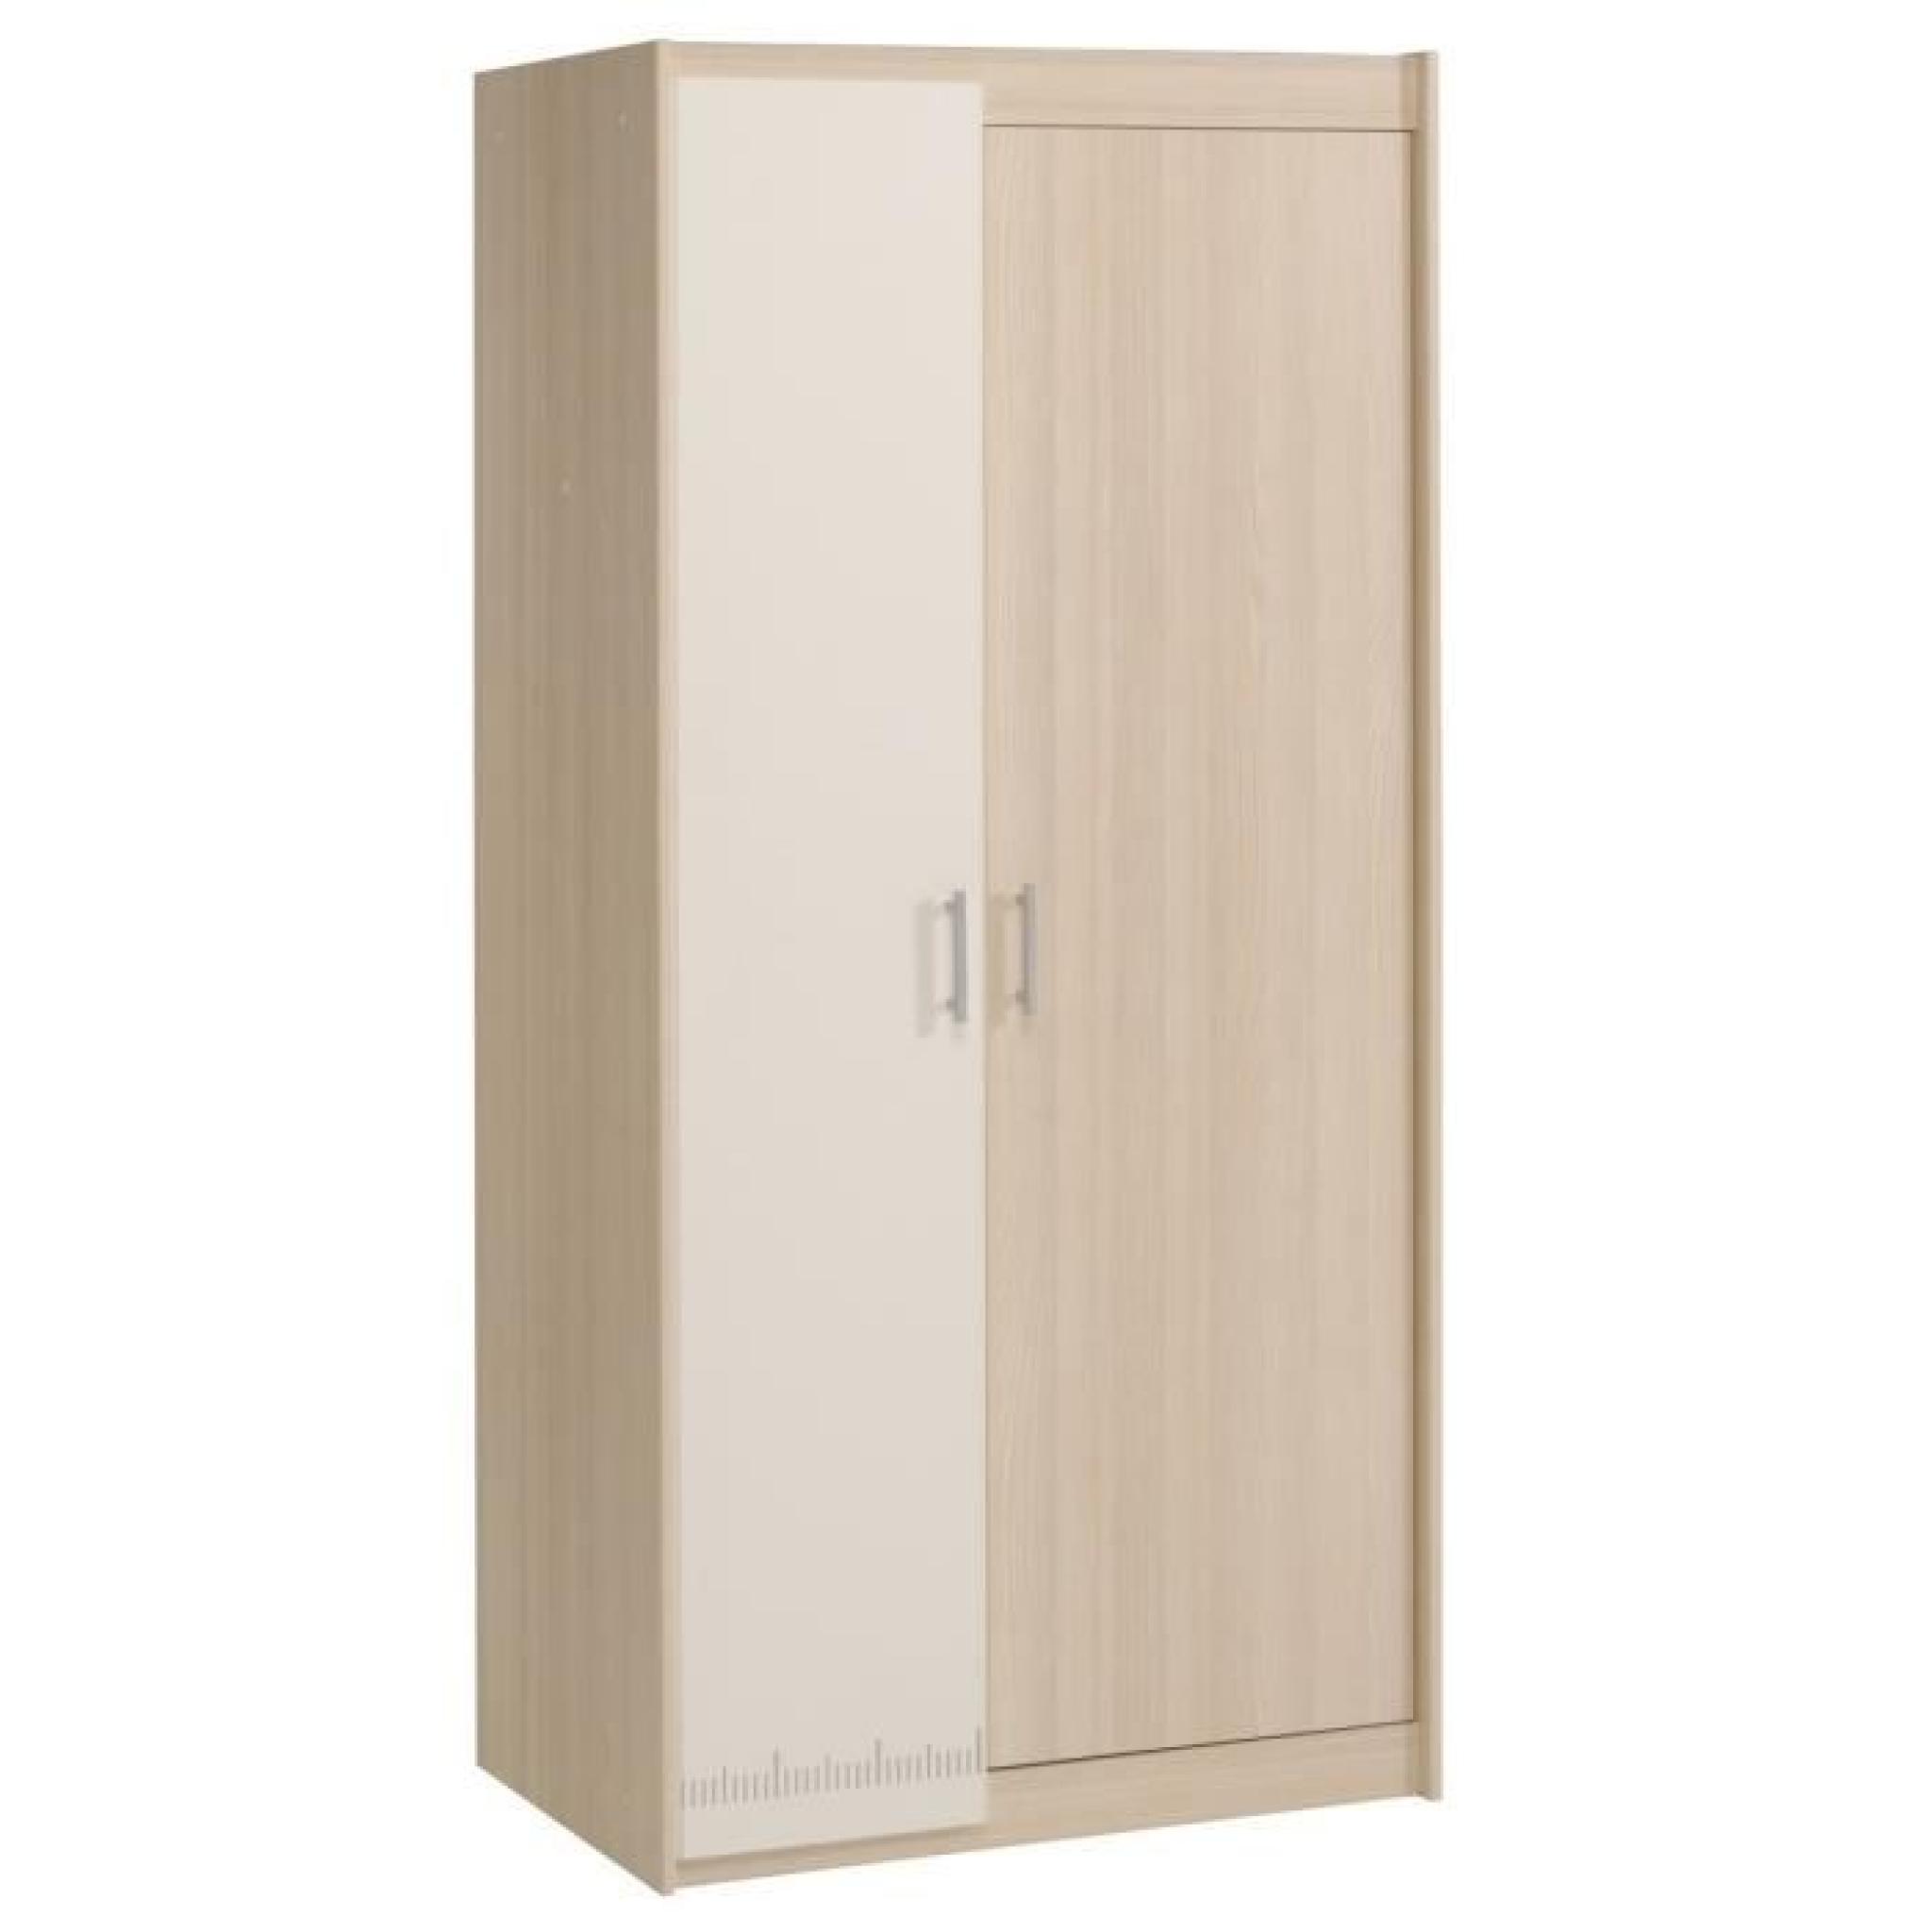 JOHN Armoire 85cm - 2 portes - Blanc et décor modern ash